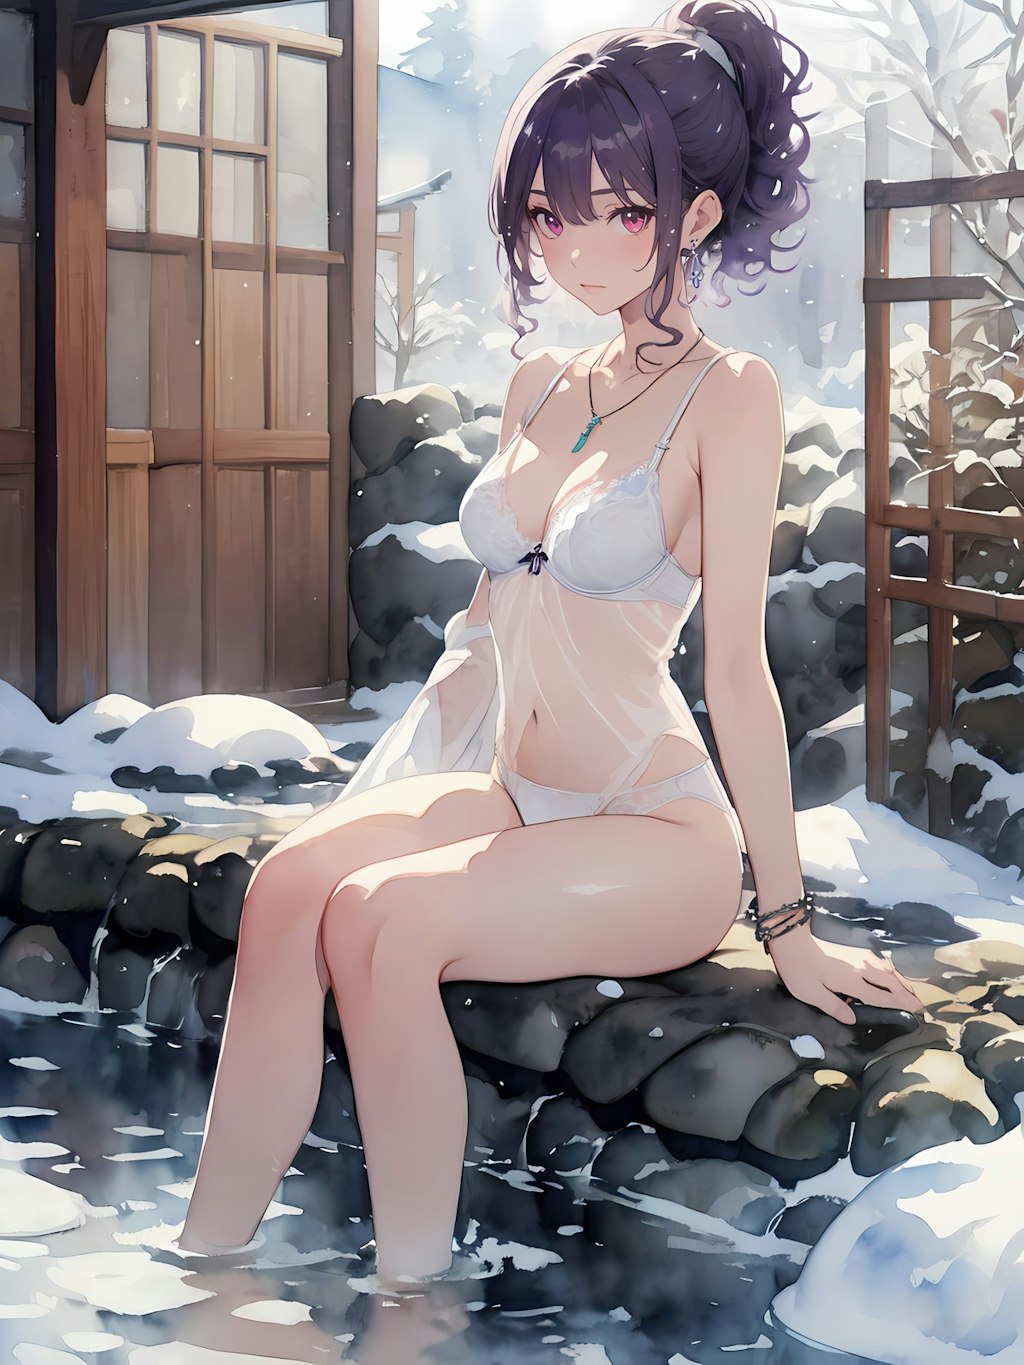 冬の露天風呂の風景